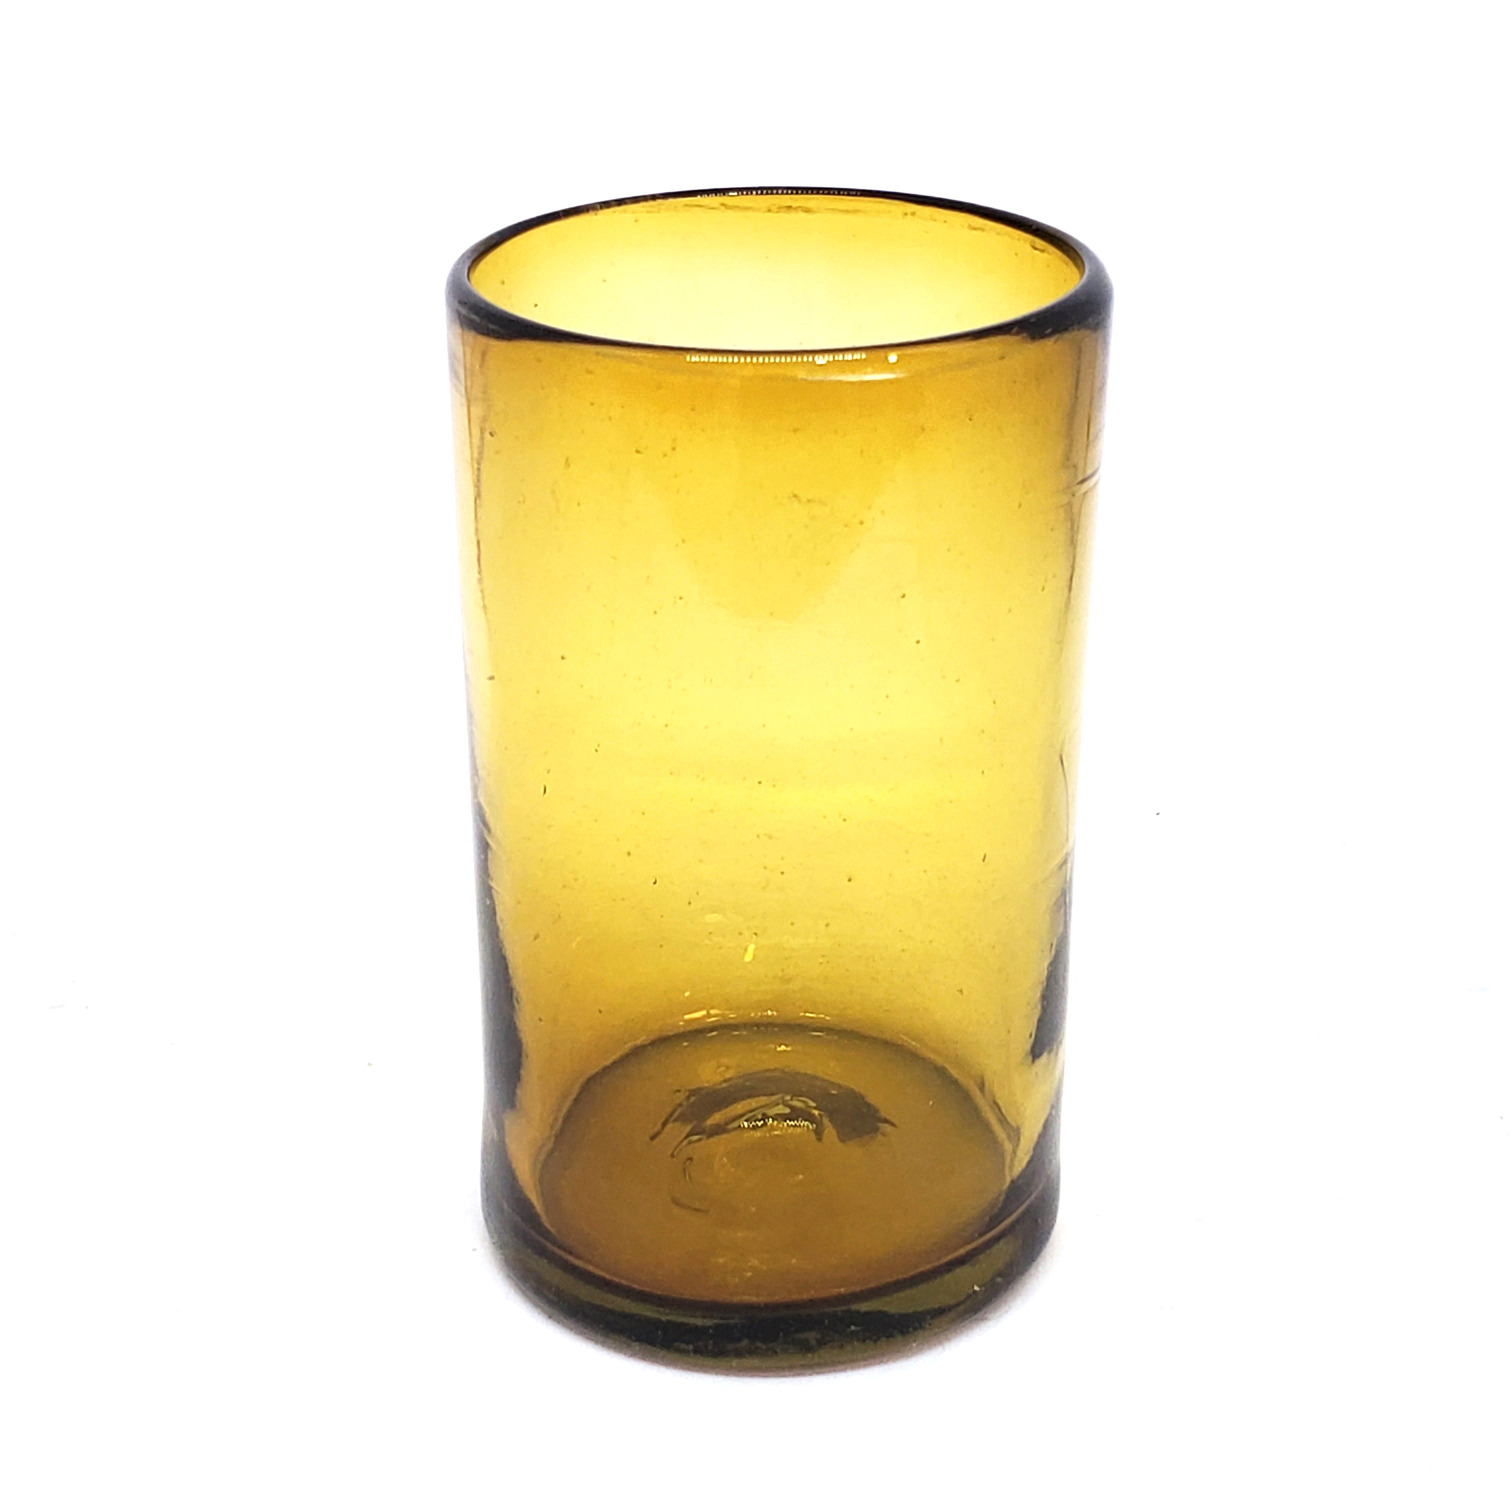 Vasos de Vidrio Soplado / Juego de 6 vasos grandes color ambar / Éstos artesanales vasos le darán un toque clásico a su bebida favorita.